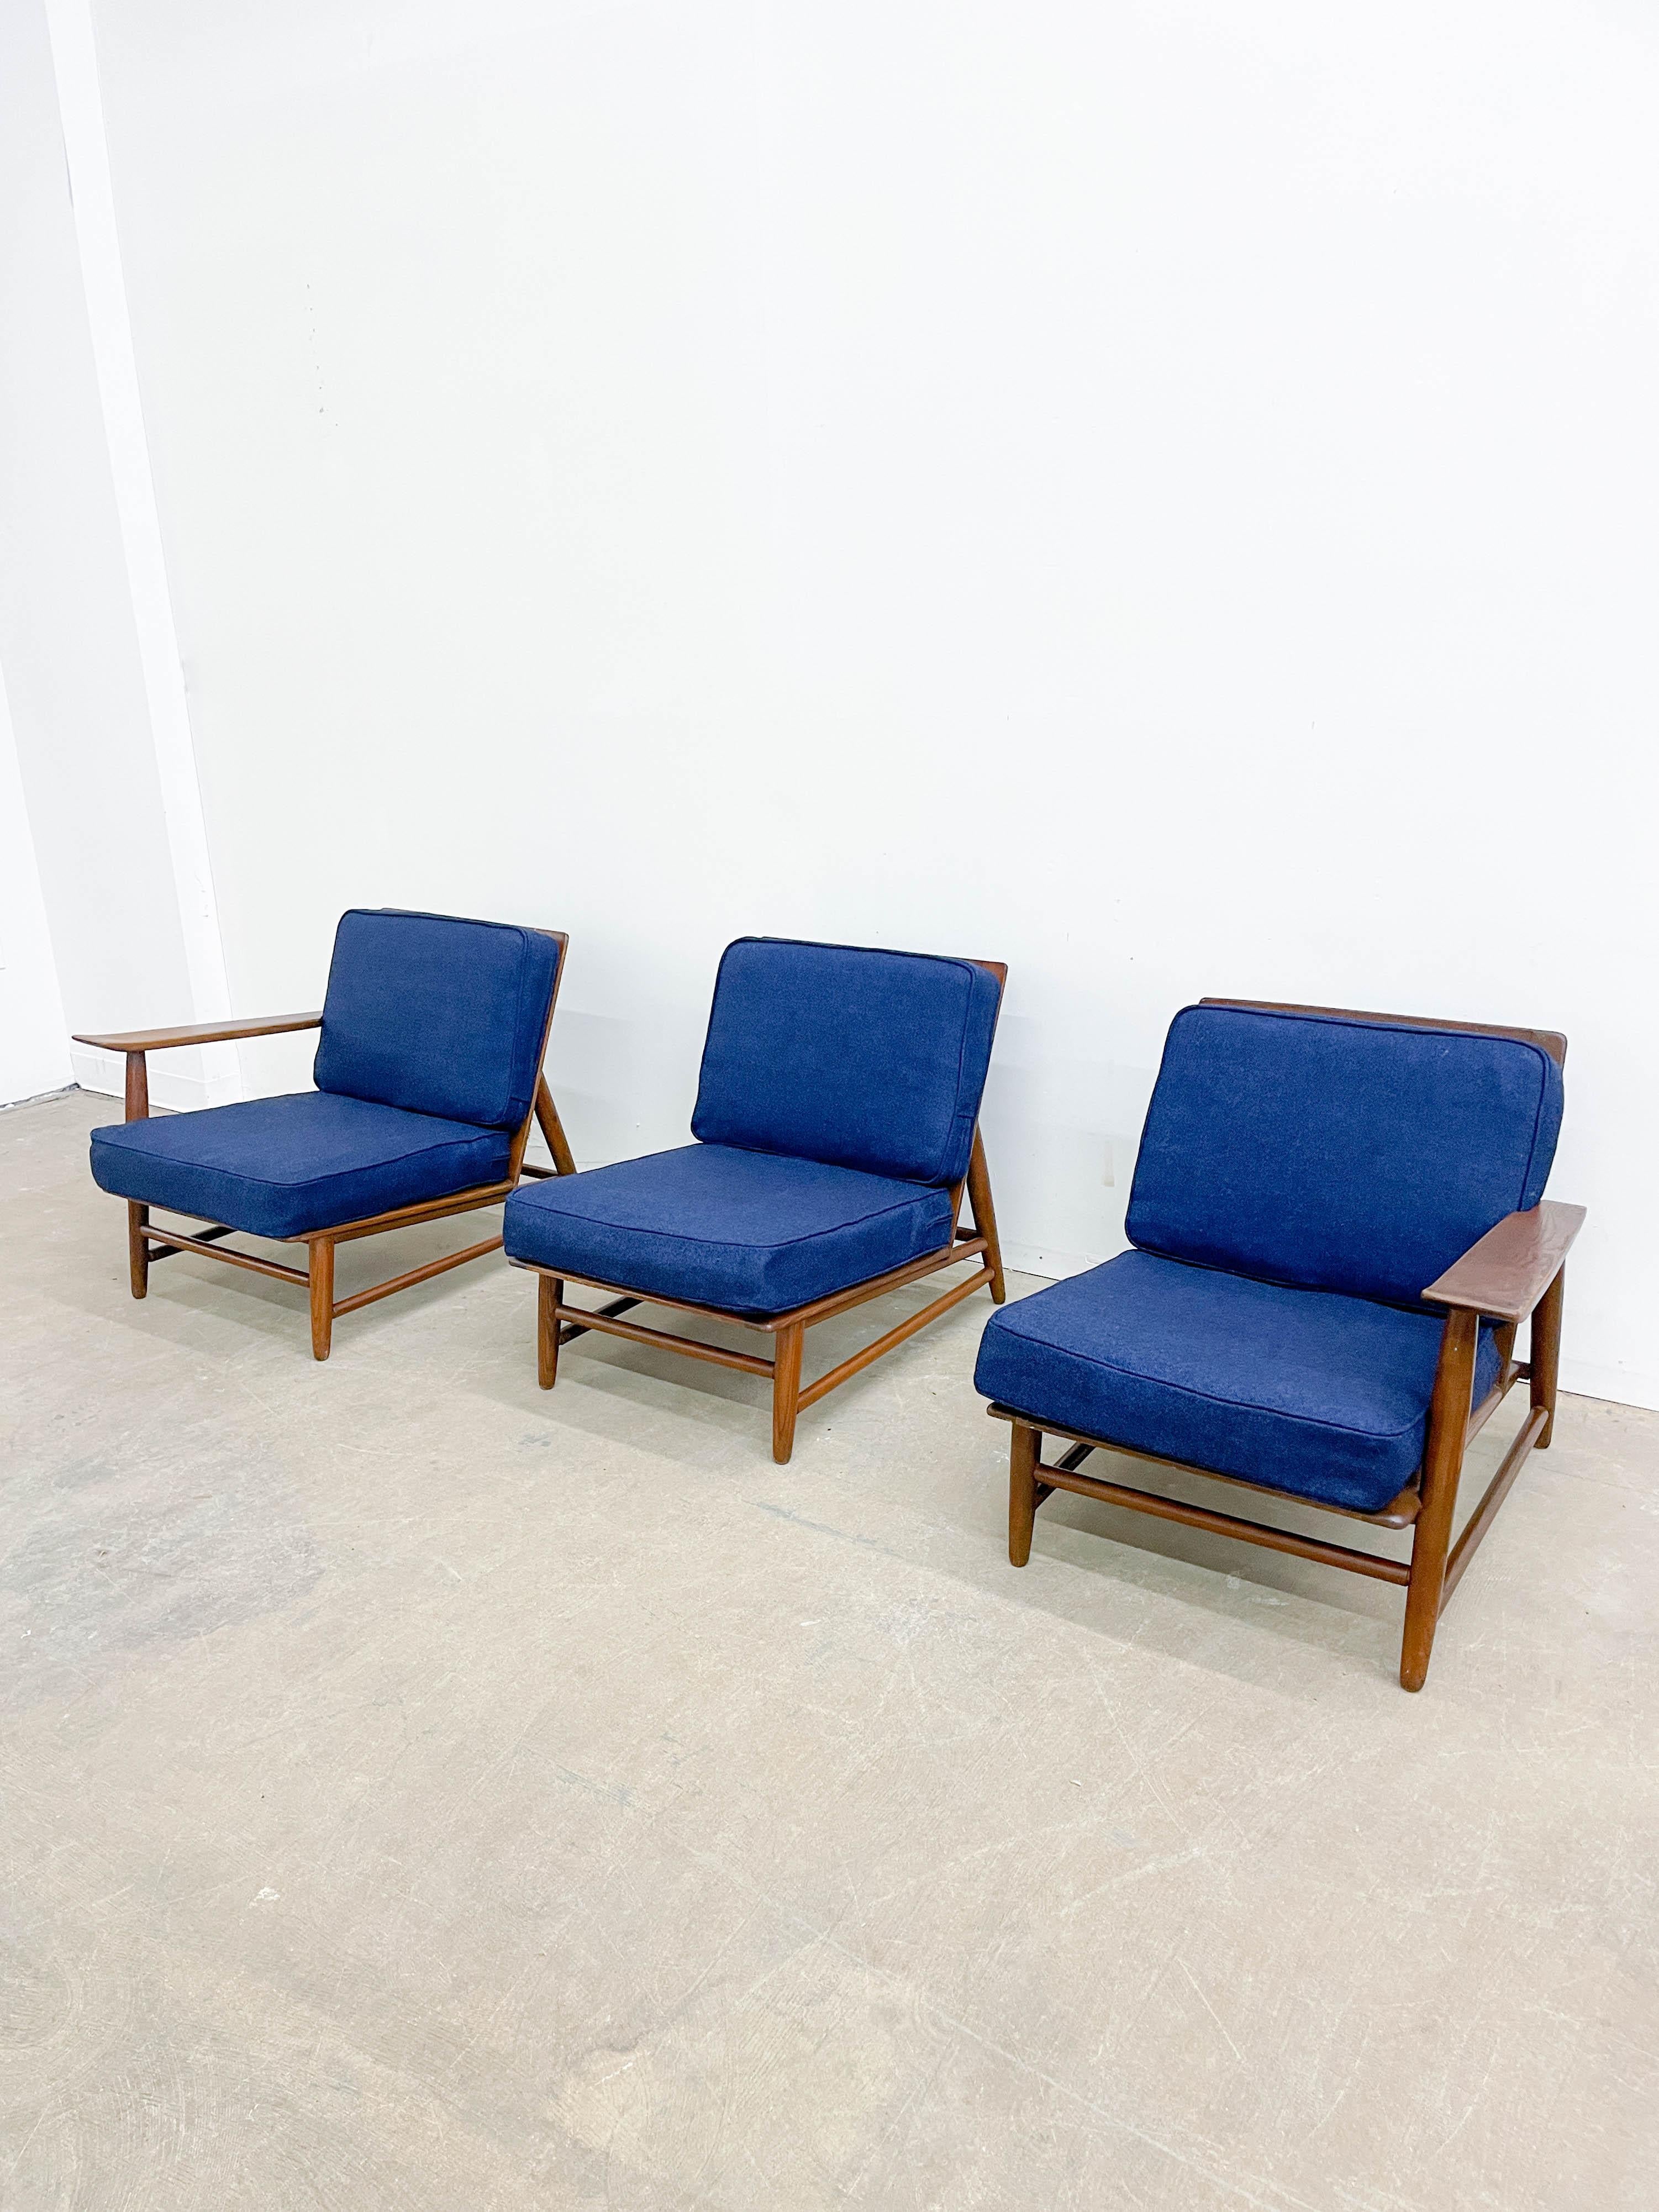 20th Century Haywood Wakefield Nakashima style modular seating